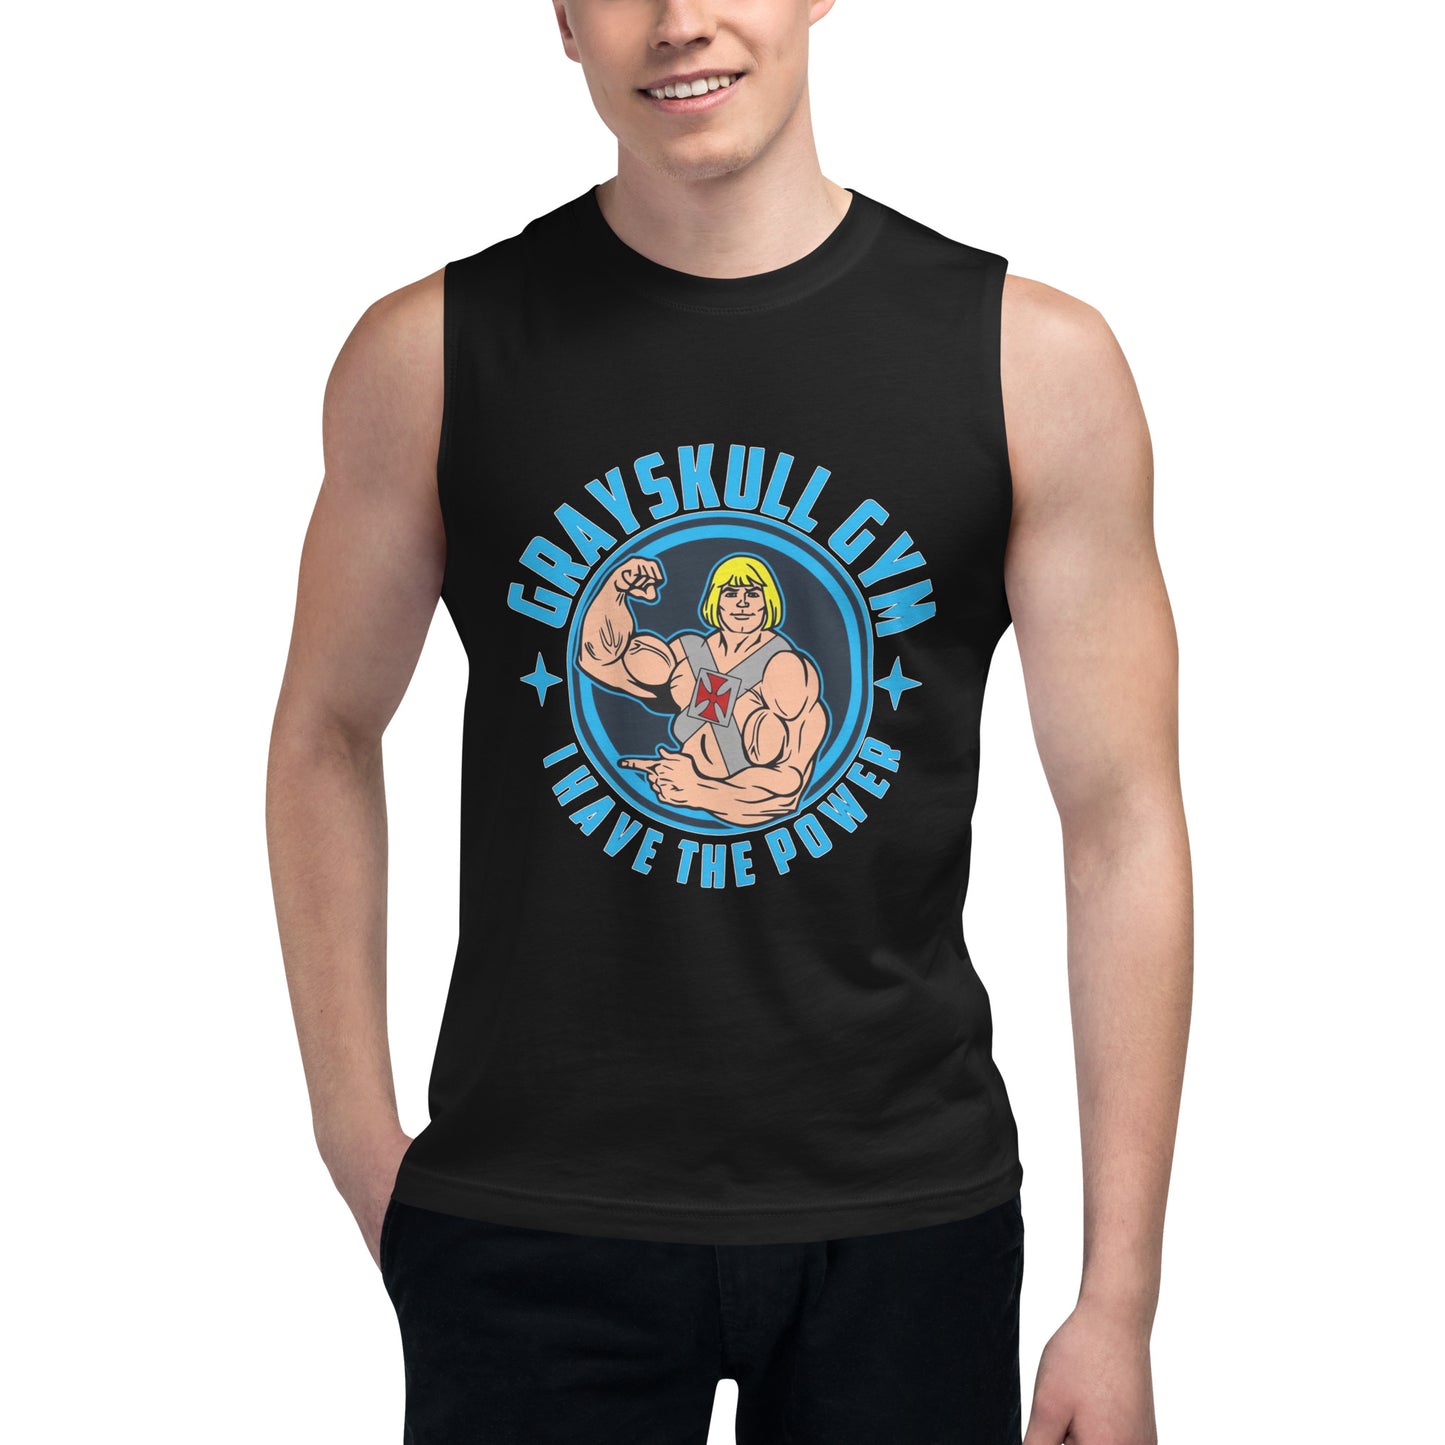 Camiseta sin mangas perfecta para entrenar, Camiseta Grayskull Gym compra en línea y experimenta el mejor servicio al cliente. envíos internacionales.